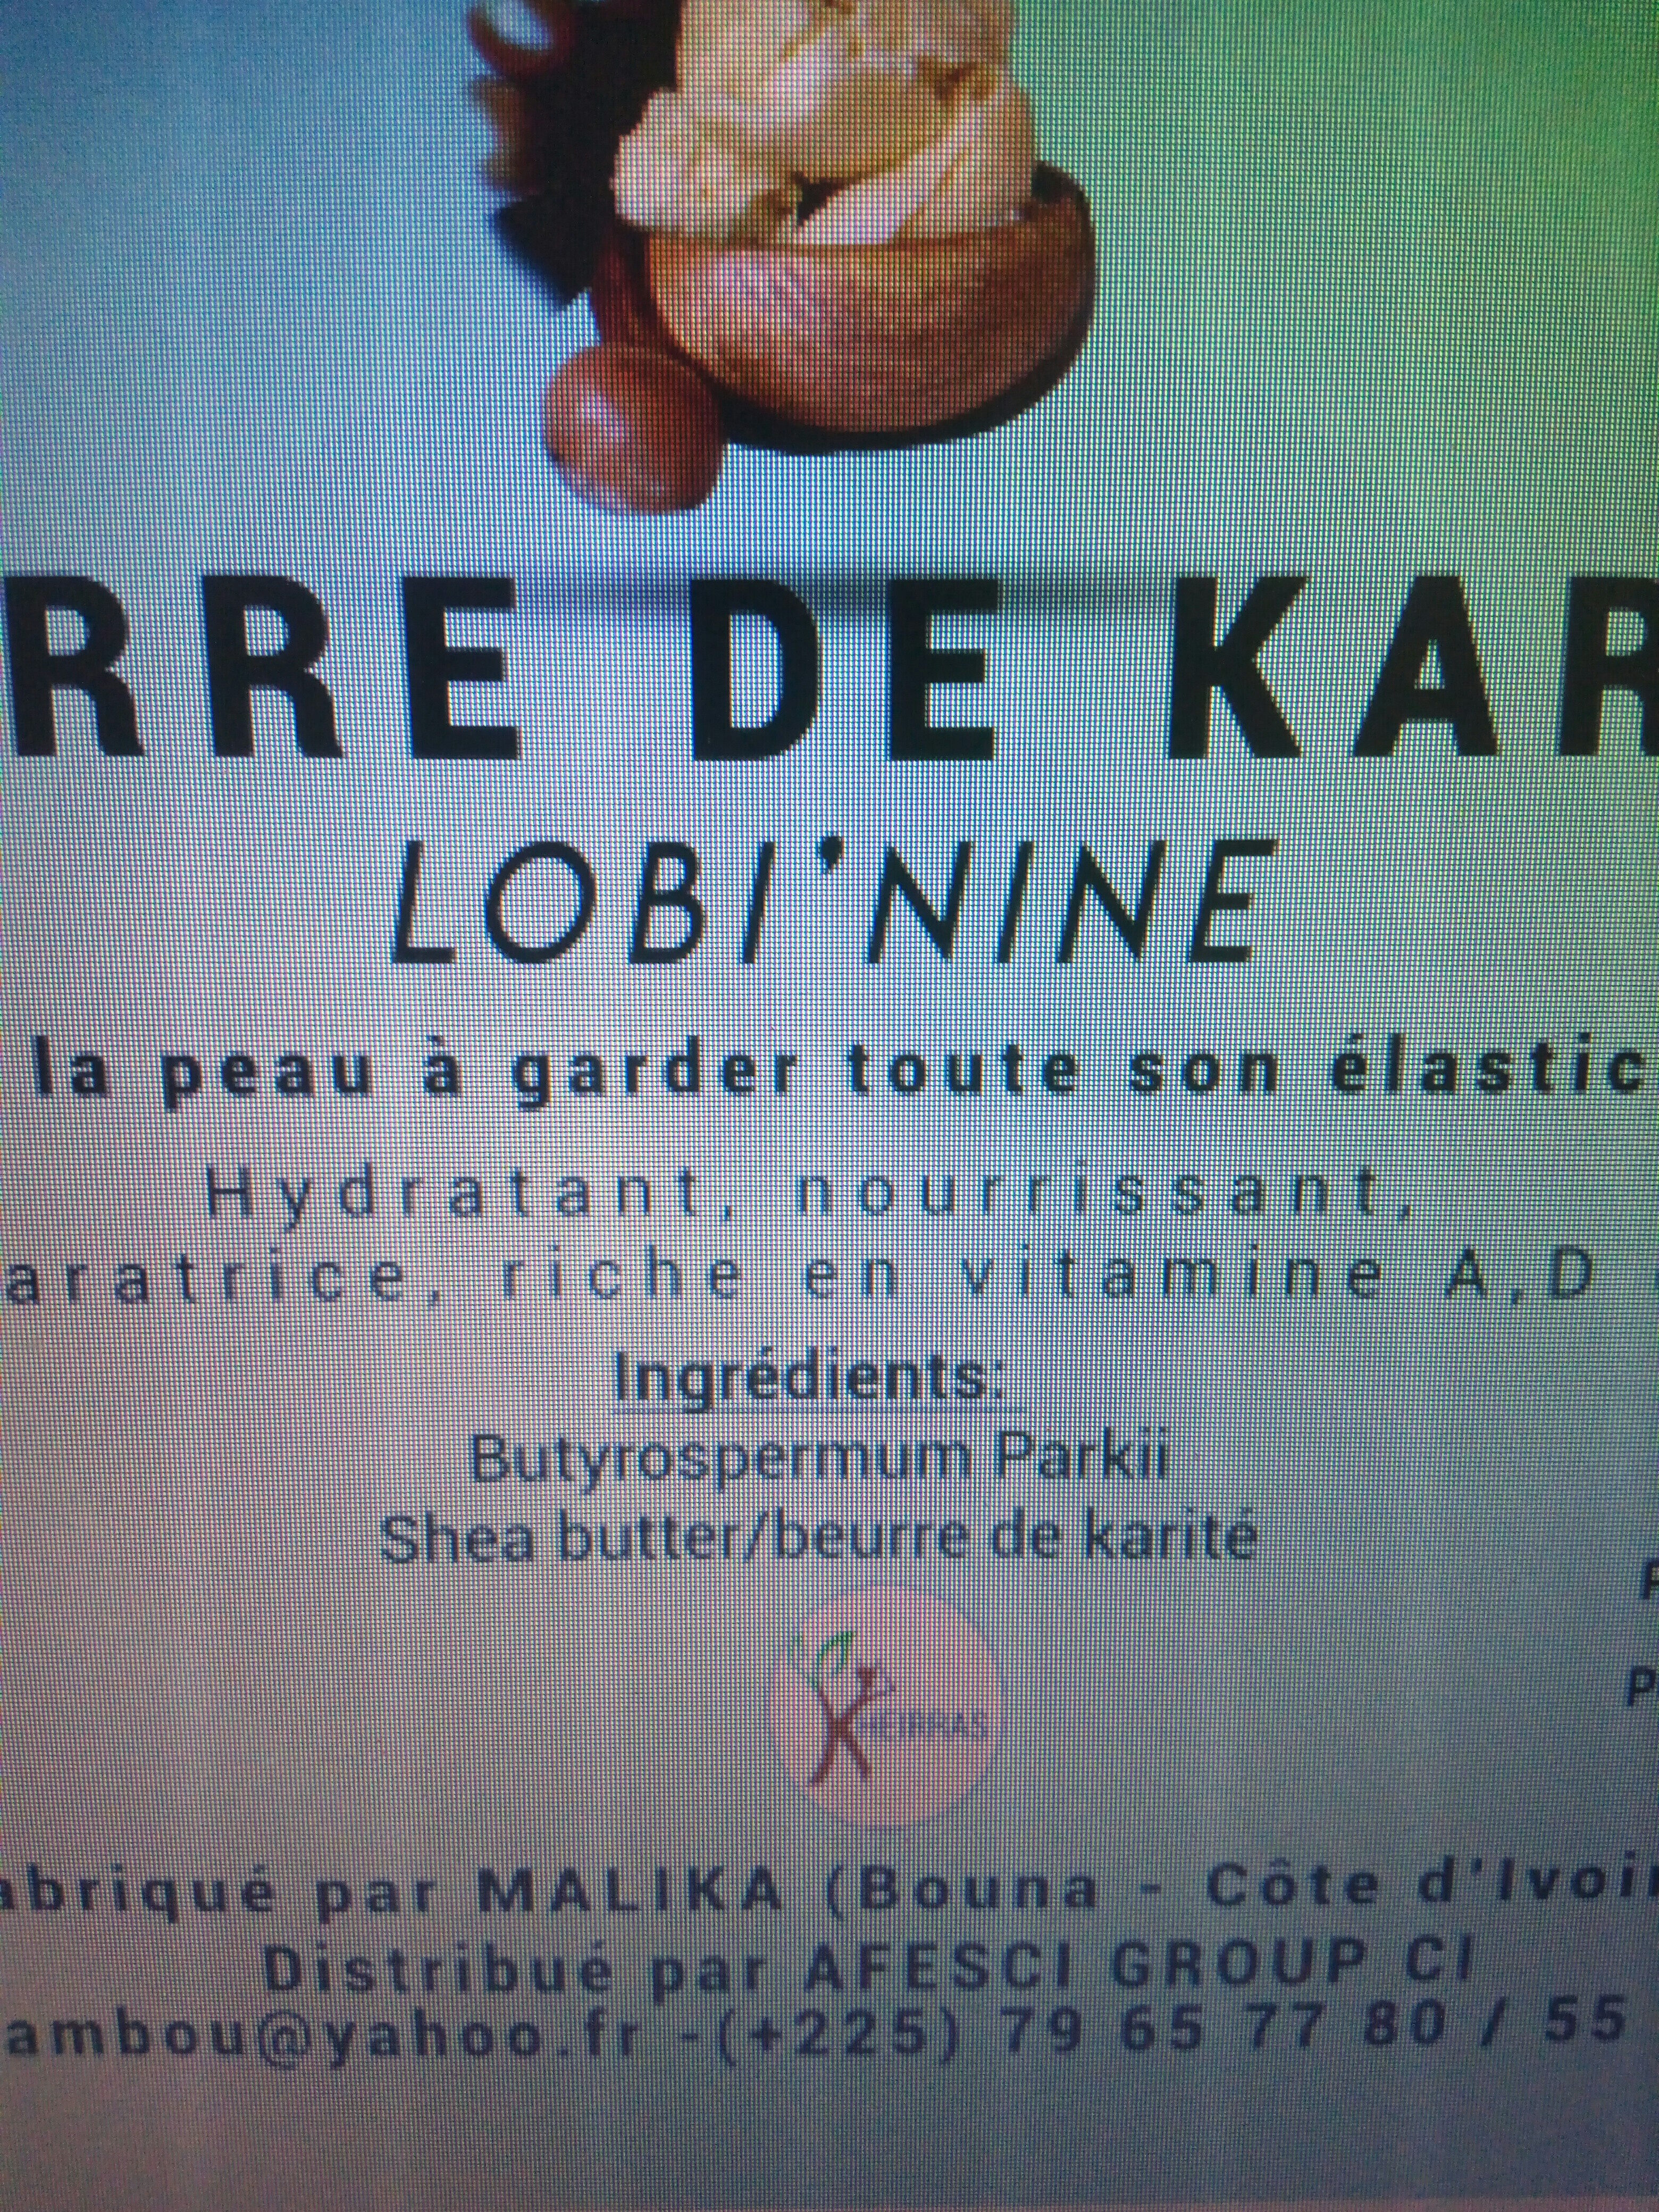 Beurre de karité - Ingredientes - fr